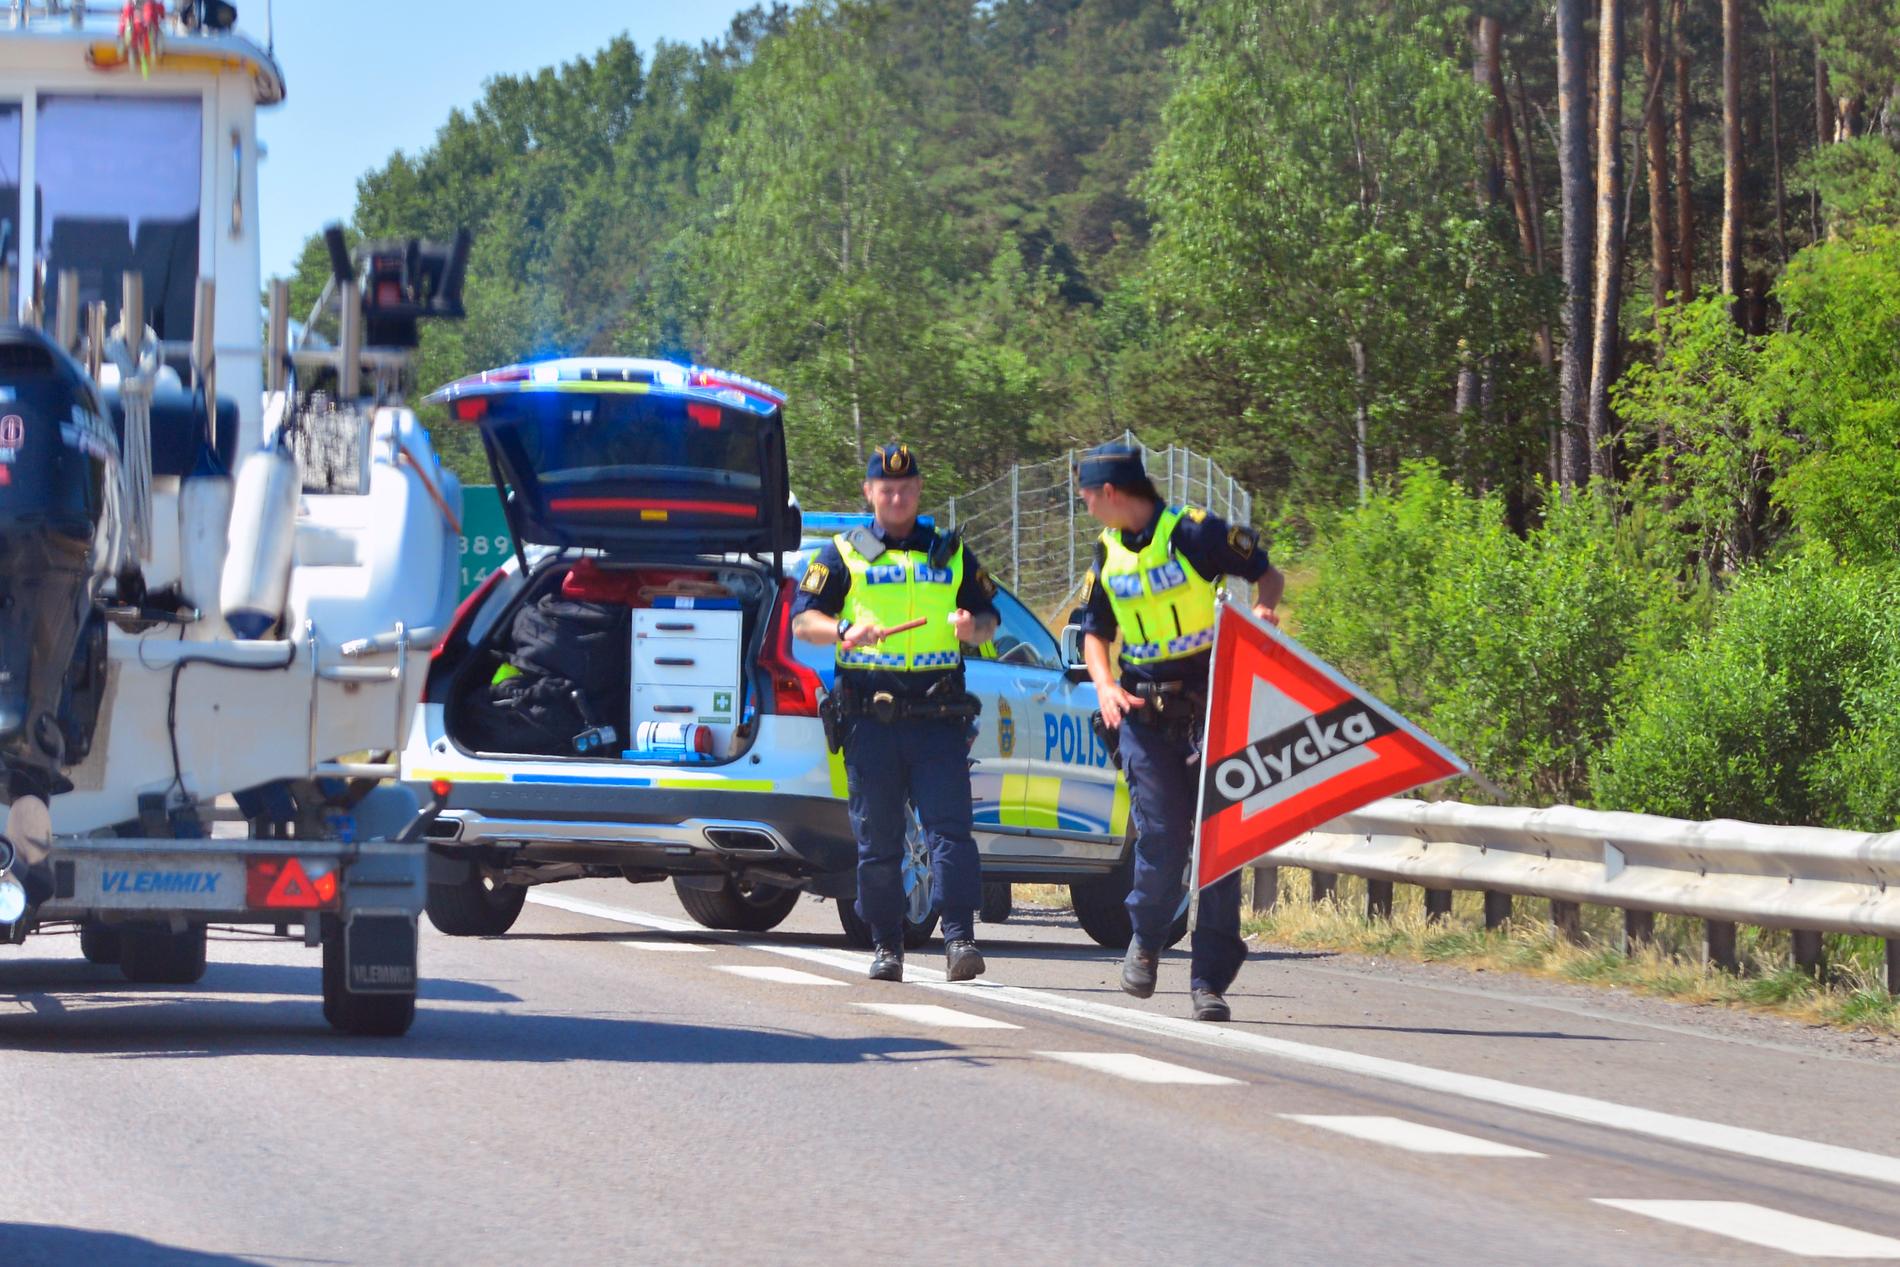 Polis spärrar av vid olycksplatsen mellan Norrköping och Linköping.